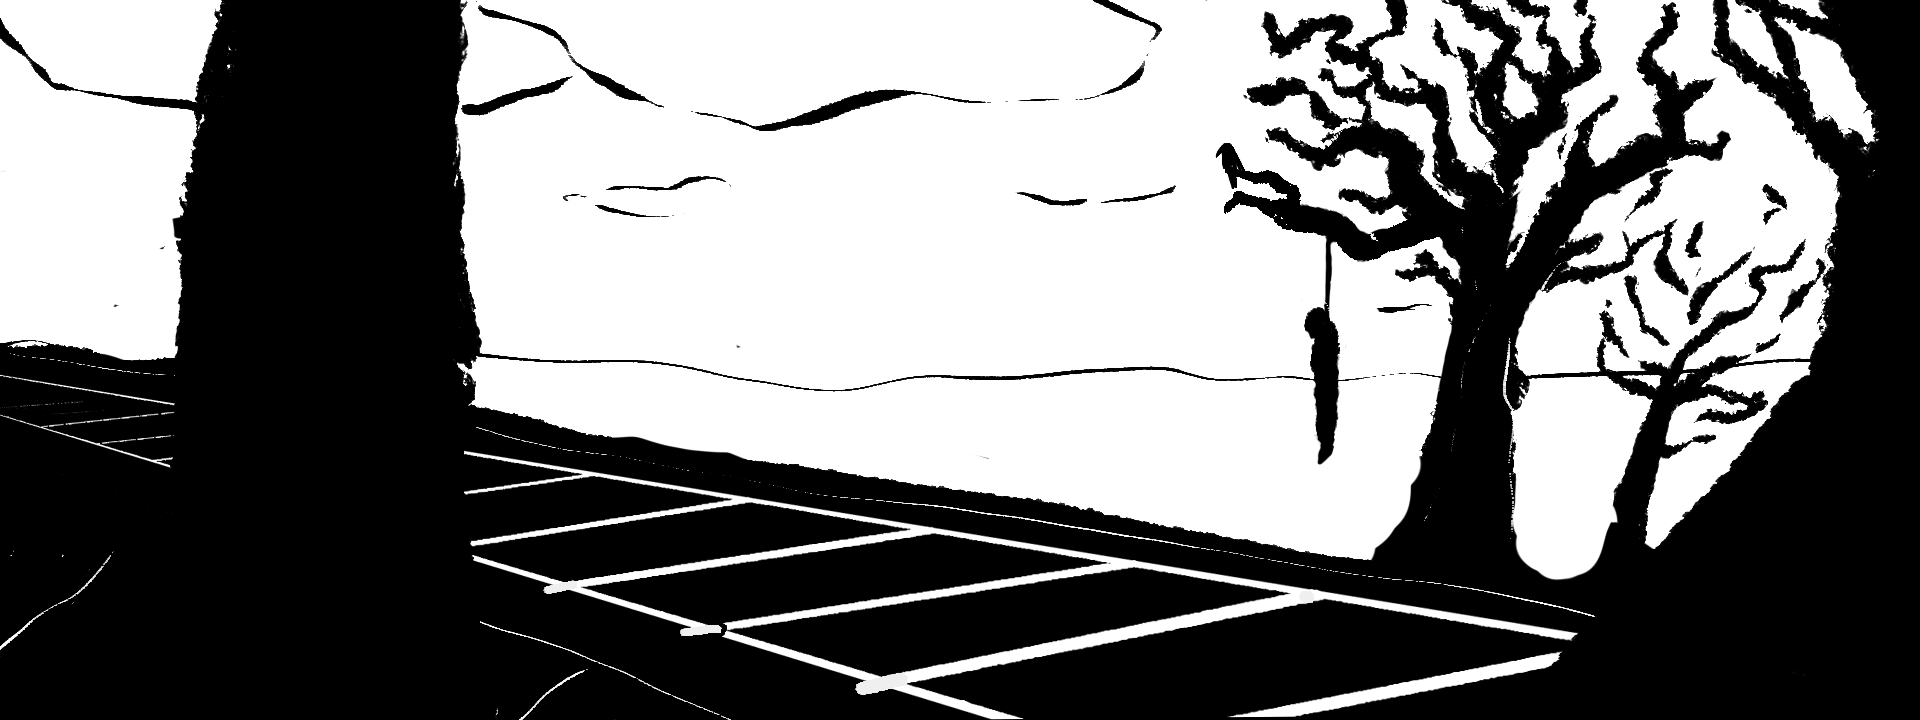 rysunek czarno-biały, tory kolejowe, w głębi za torami drzewo i sylweta wisielca